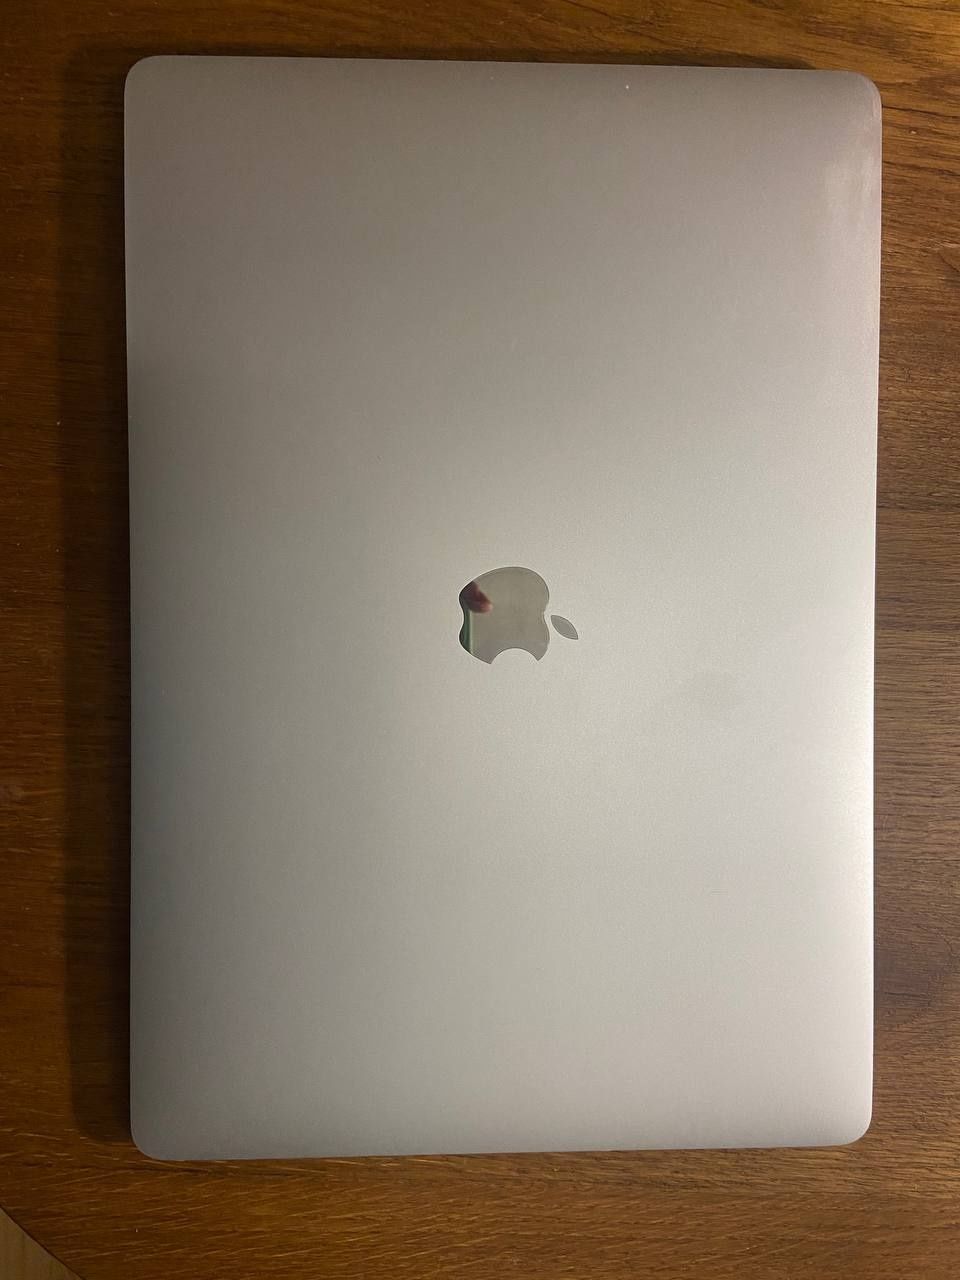 Macbook Pro a1990 2018